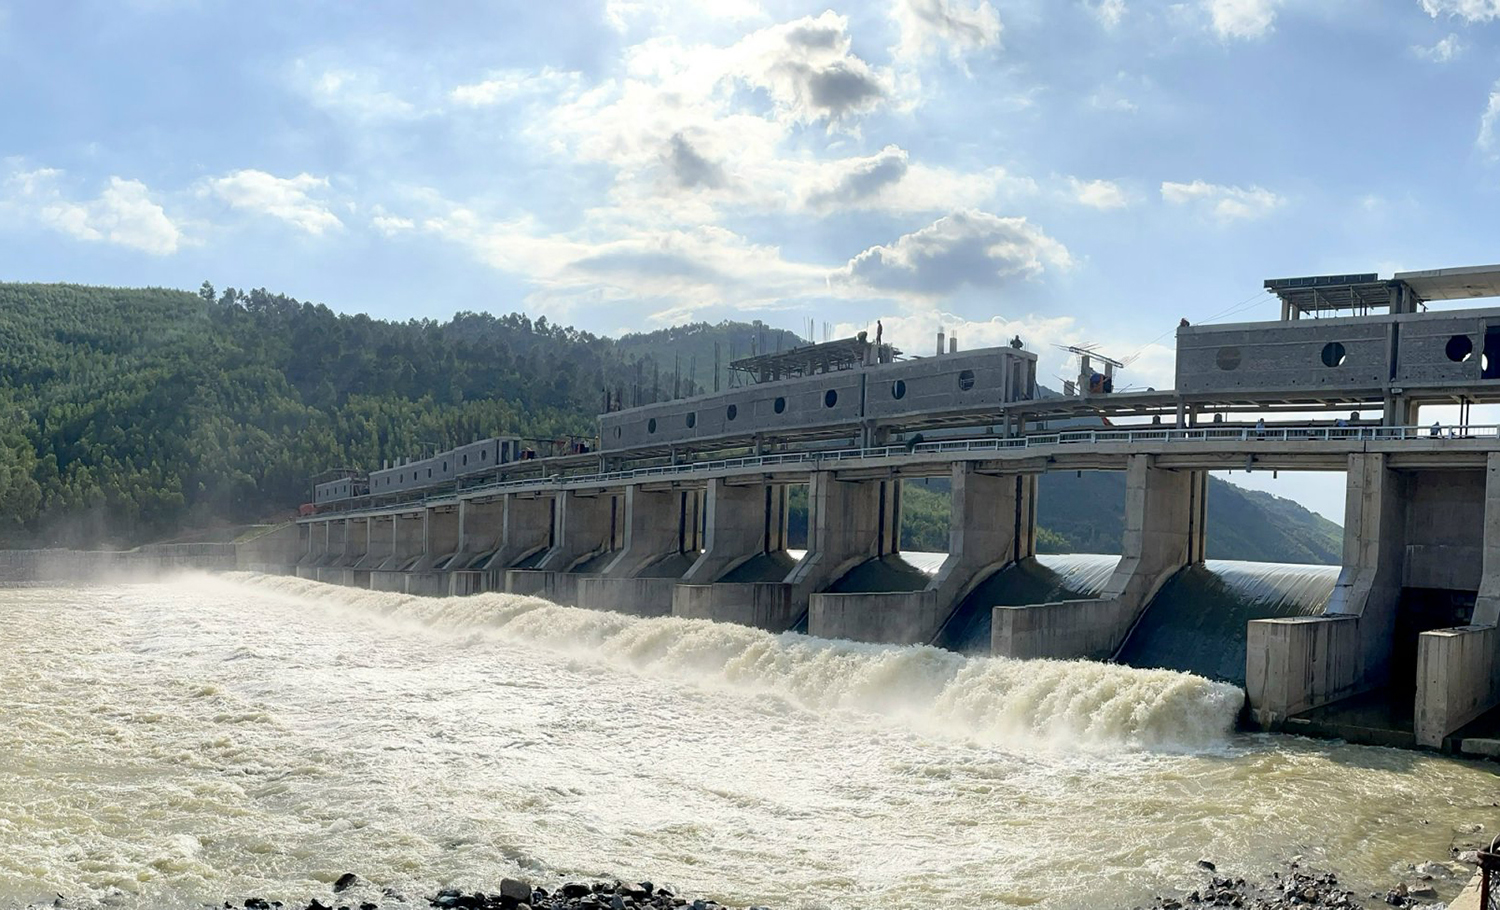 Hệ thống thủy lợi Rào Nan bảo đảm tưới nguồn nước sinh hoạt, sản xuất cho 22 xã vùng hạ lưu sông Gianh.